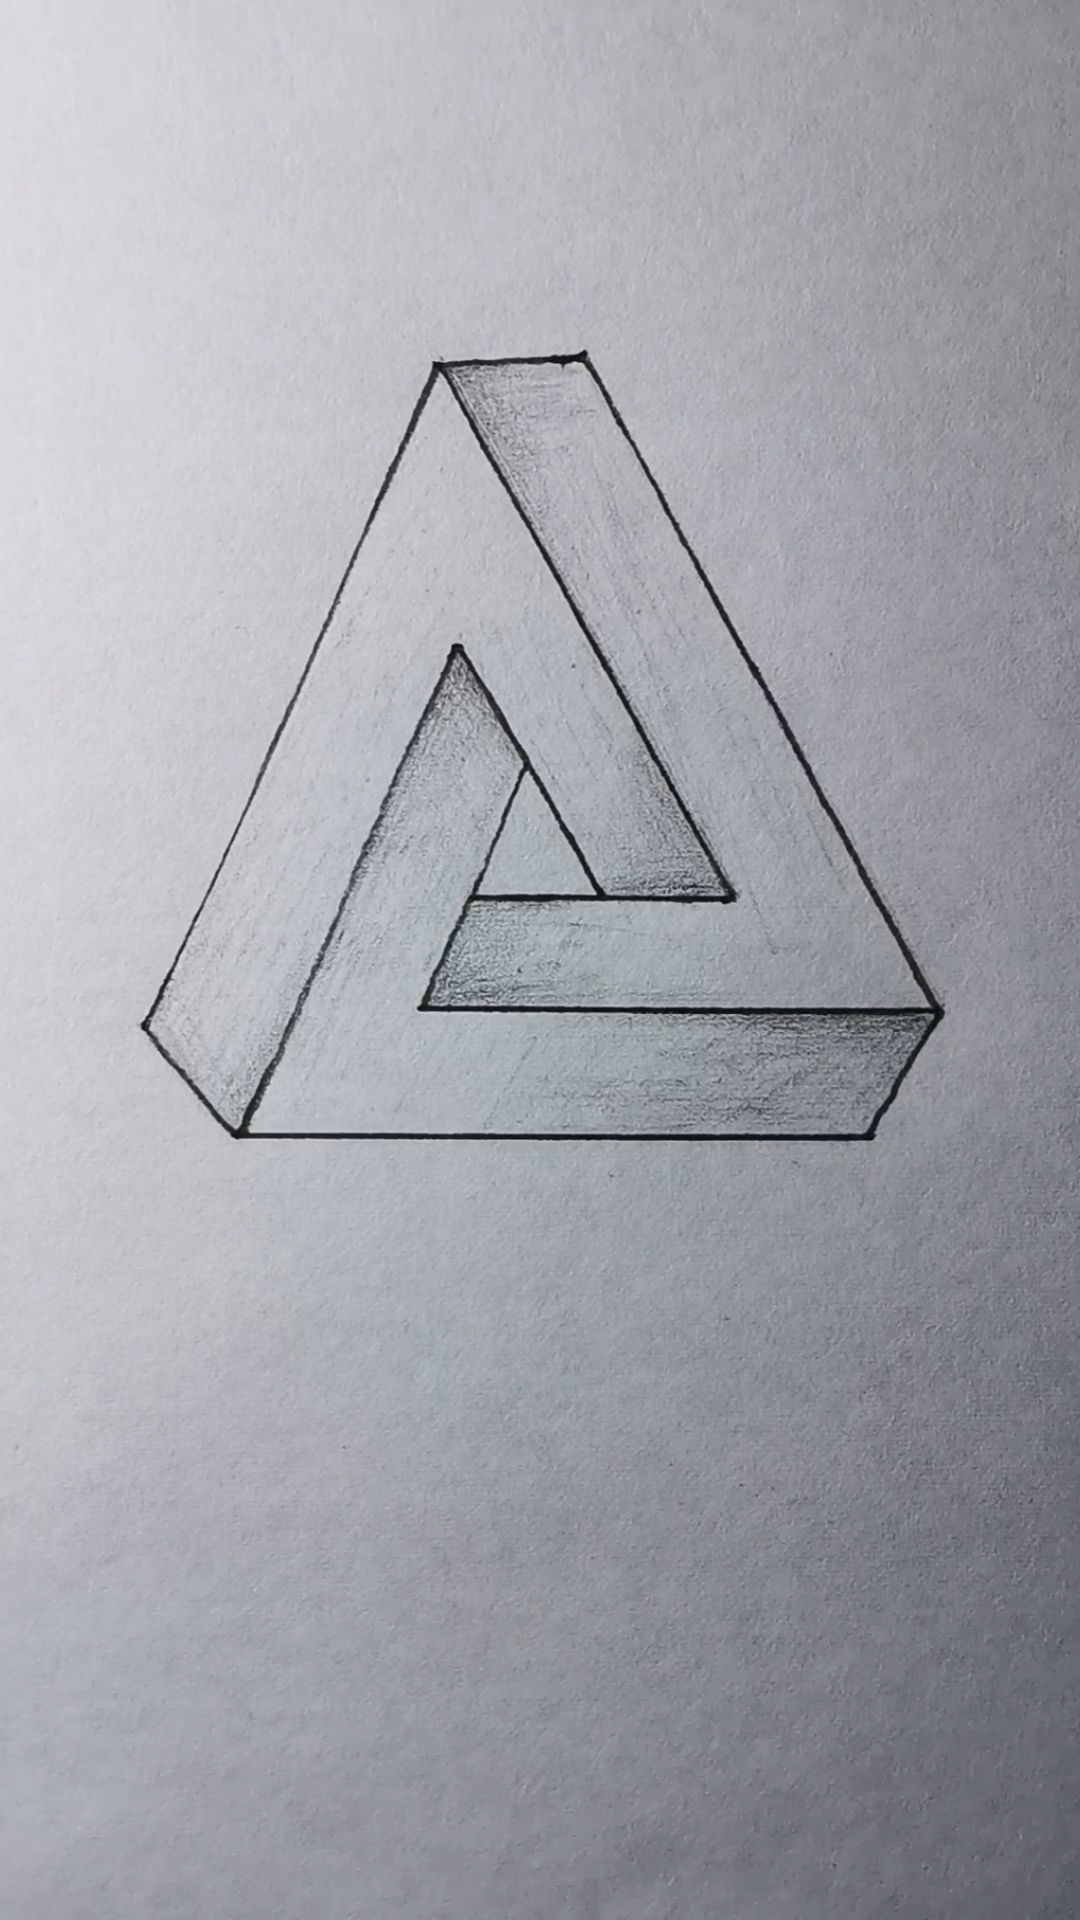 教你画不一样的立体三角形.